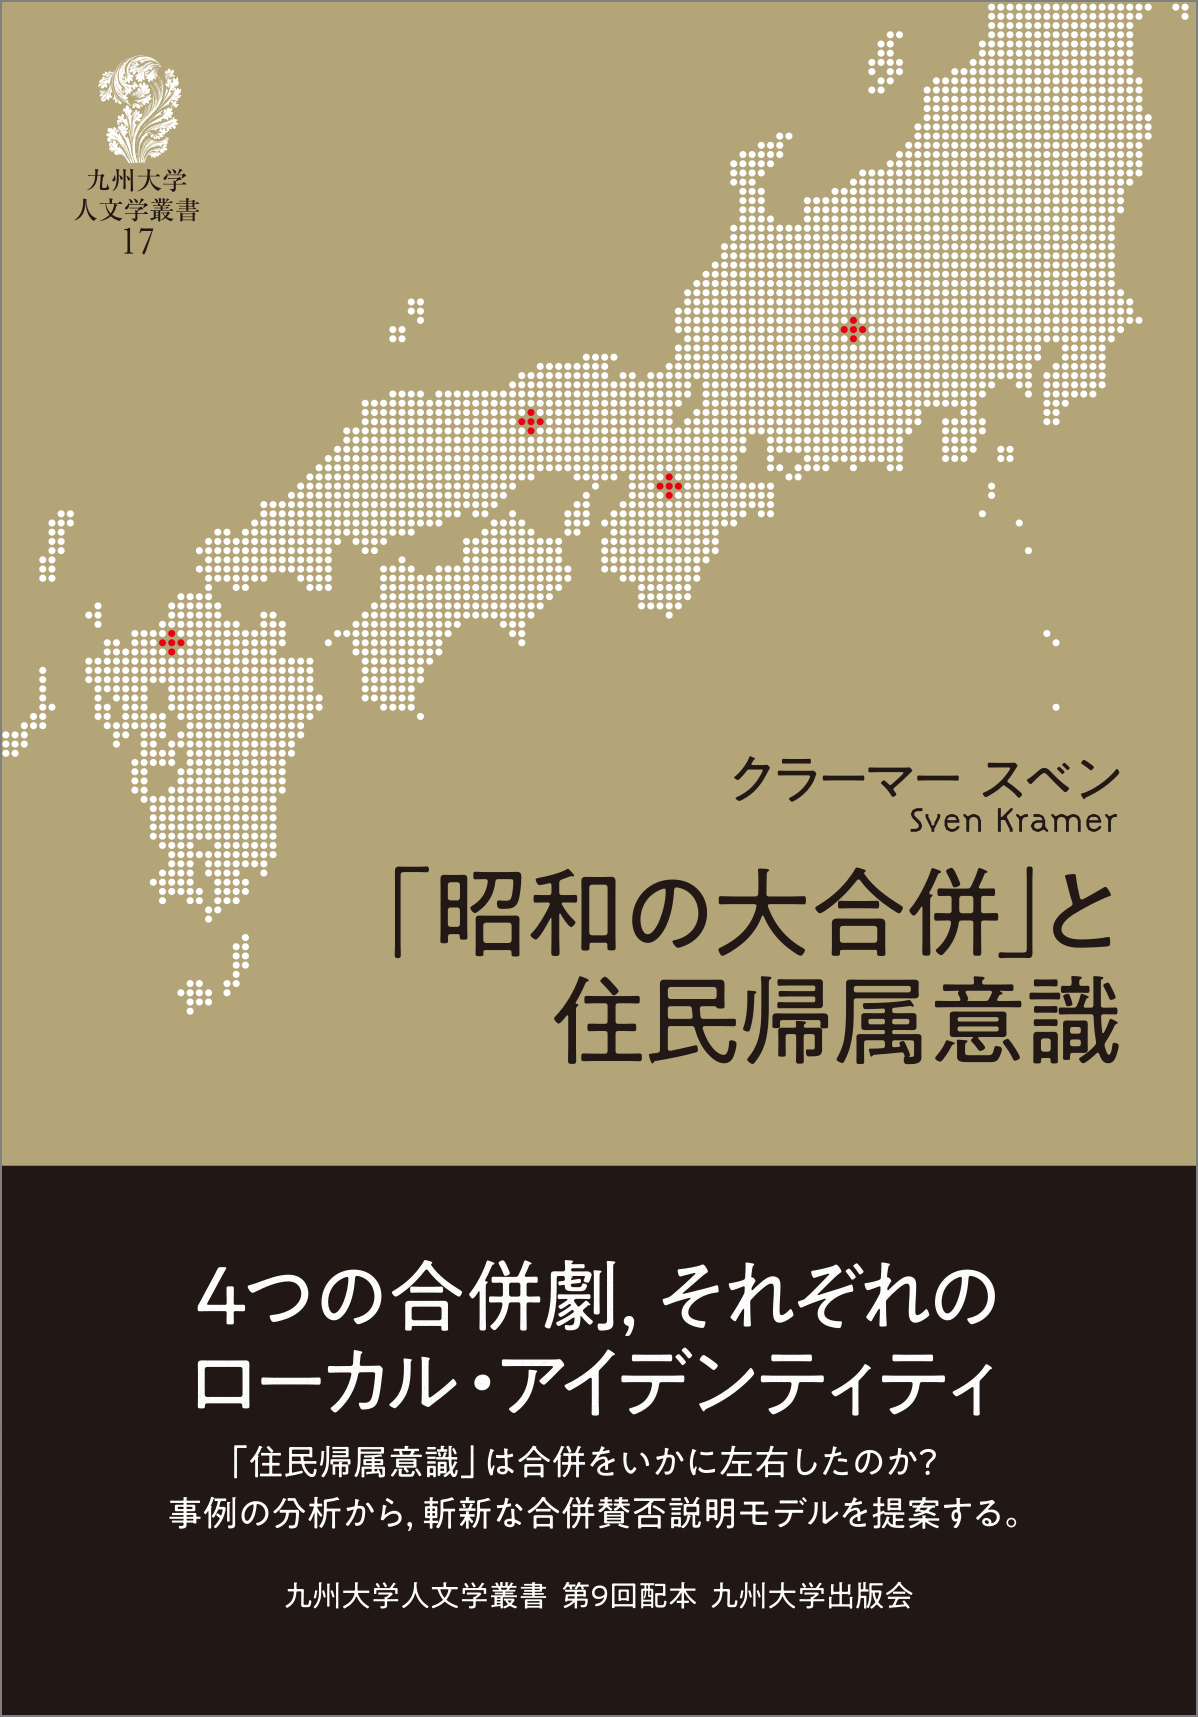 「昭和の大合併」と住民帰属意識の商品画像